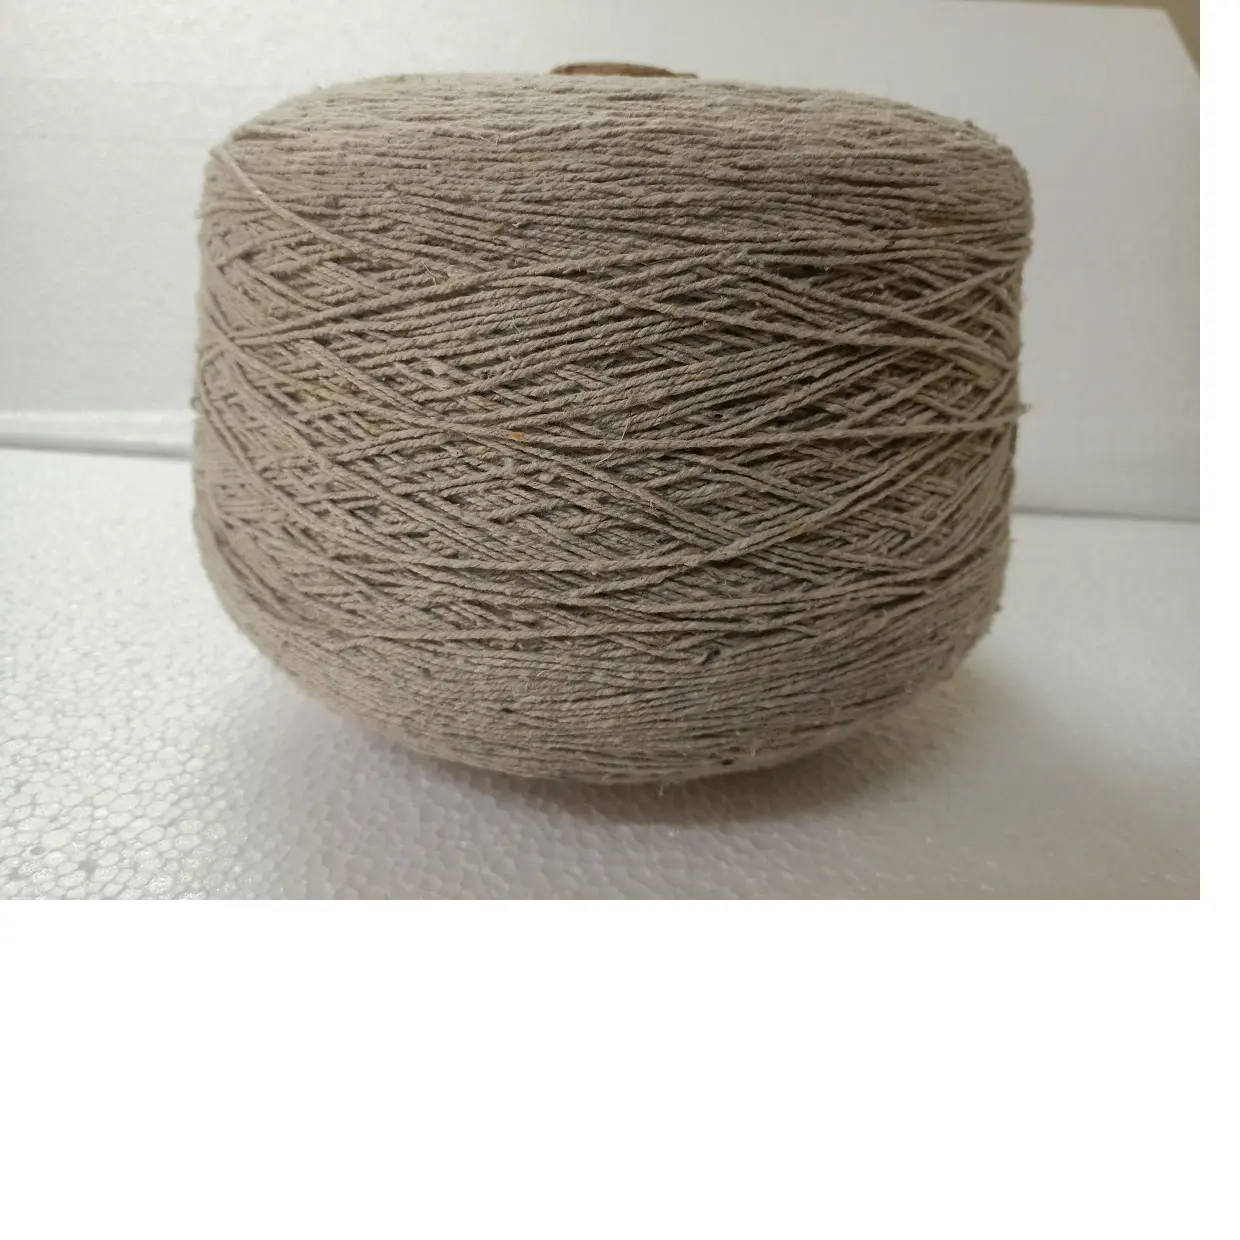 Hilo de hierba de mar natural hecho a medida 20/2 NM con 5% mezcla de algodón ideal para hilanderos y tejedores textiles